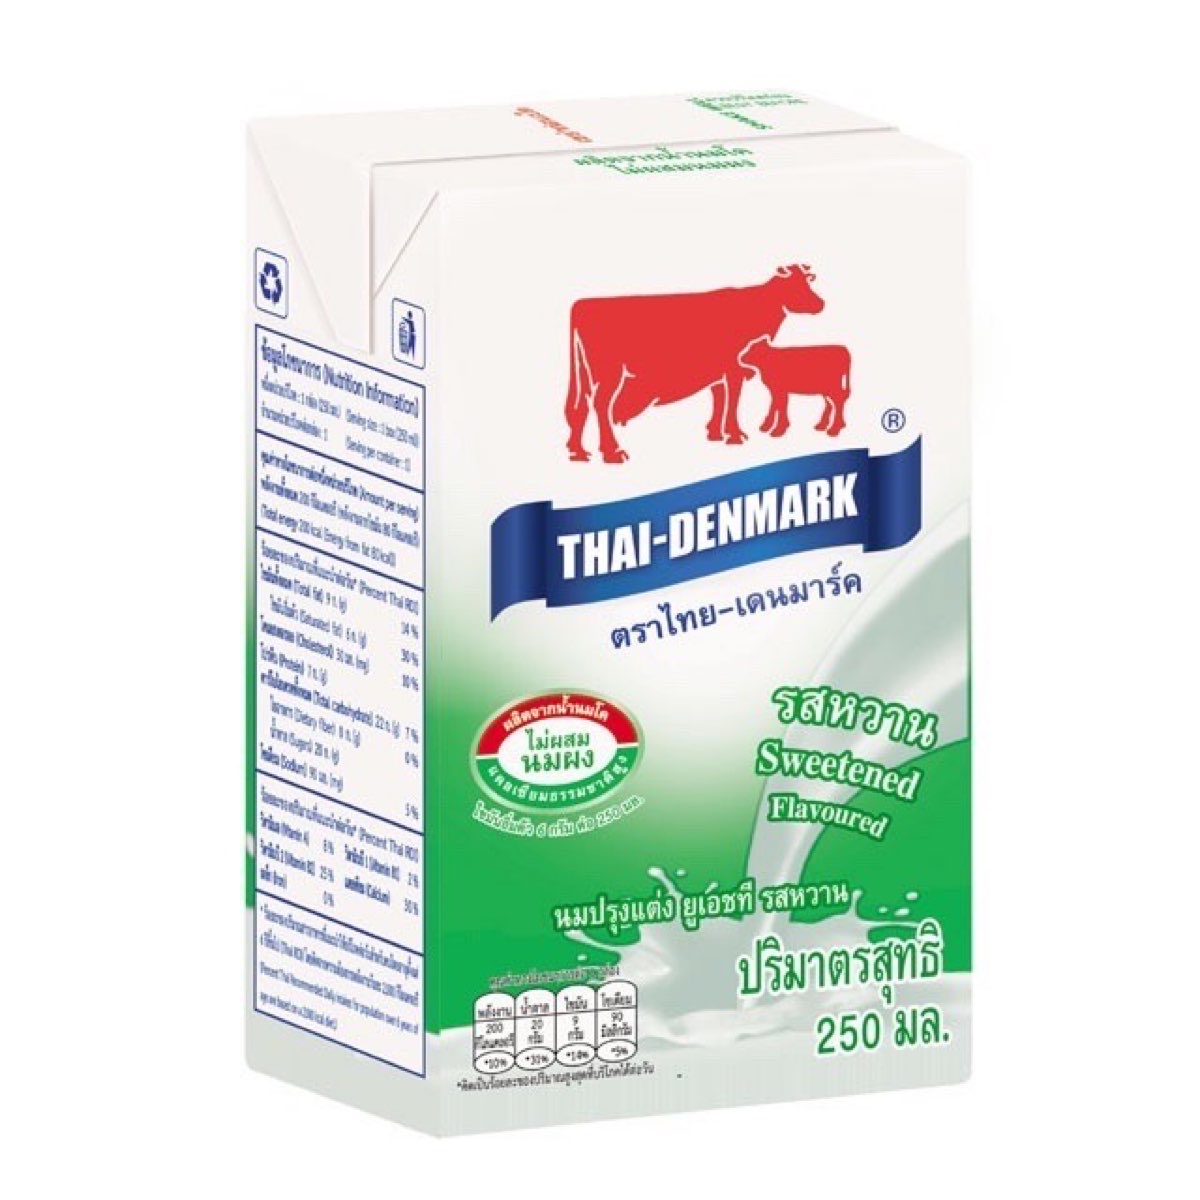 นมไทย-เดนมาร์ค รสหวาน ขนาด 250 ml. บรรจุ 12 กล่อง